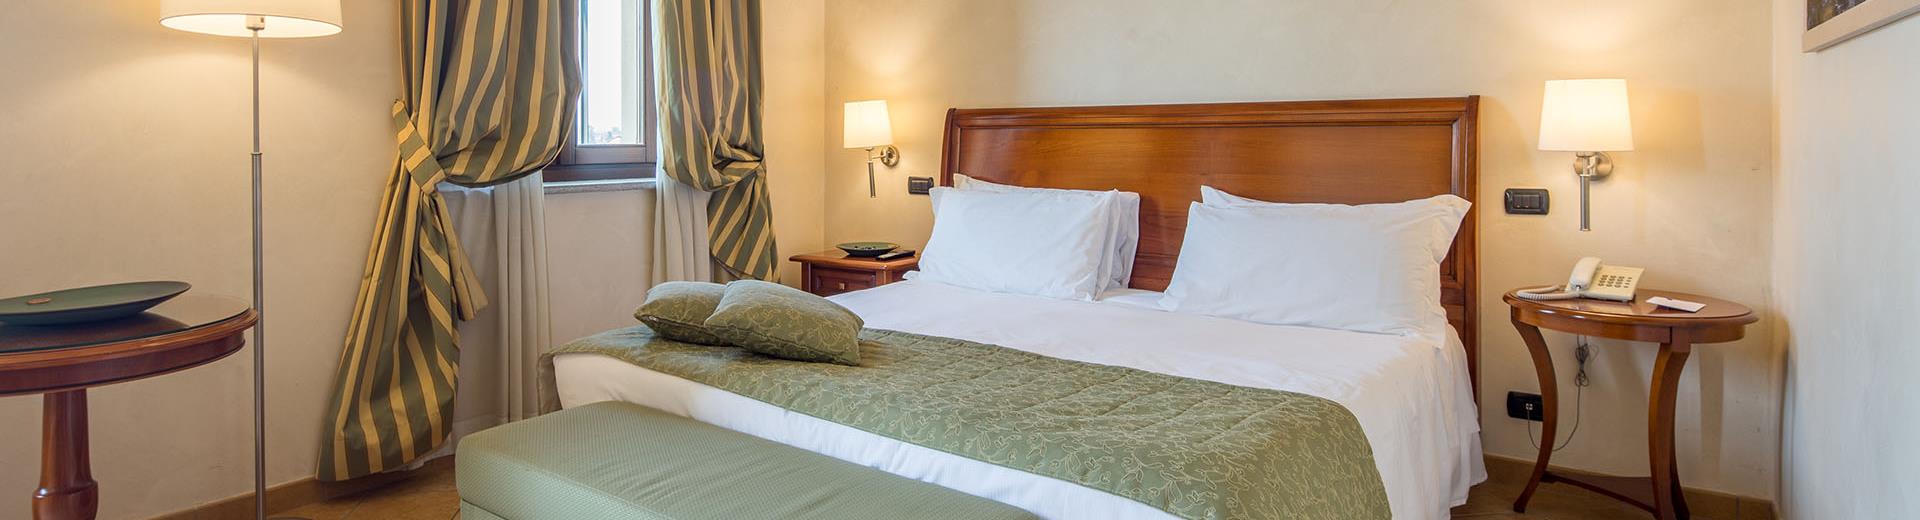 Les chambres Standard du Best Western Plus Hôtel Le Rondini, près de Turin et de son aéroport, sont conçues pour vous envelopper dans une atmosphère raffinée et familiale